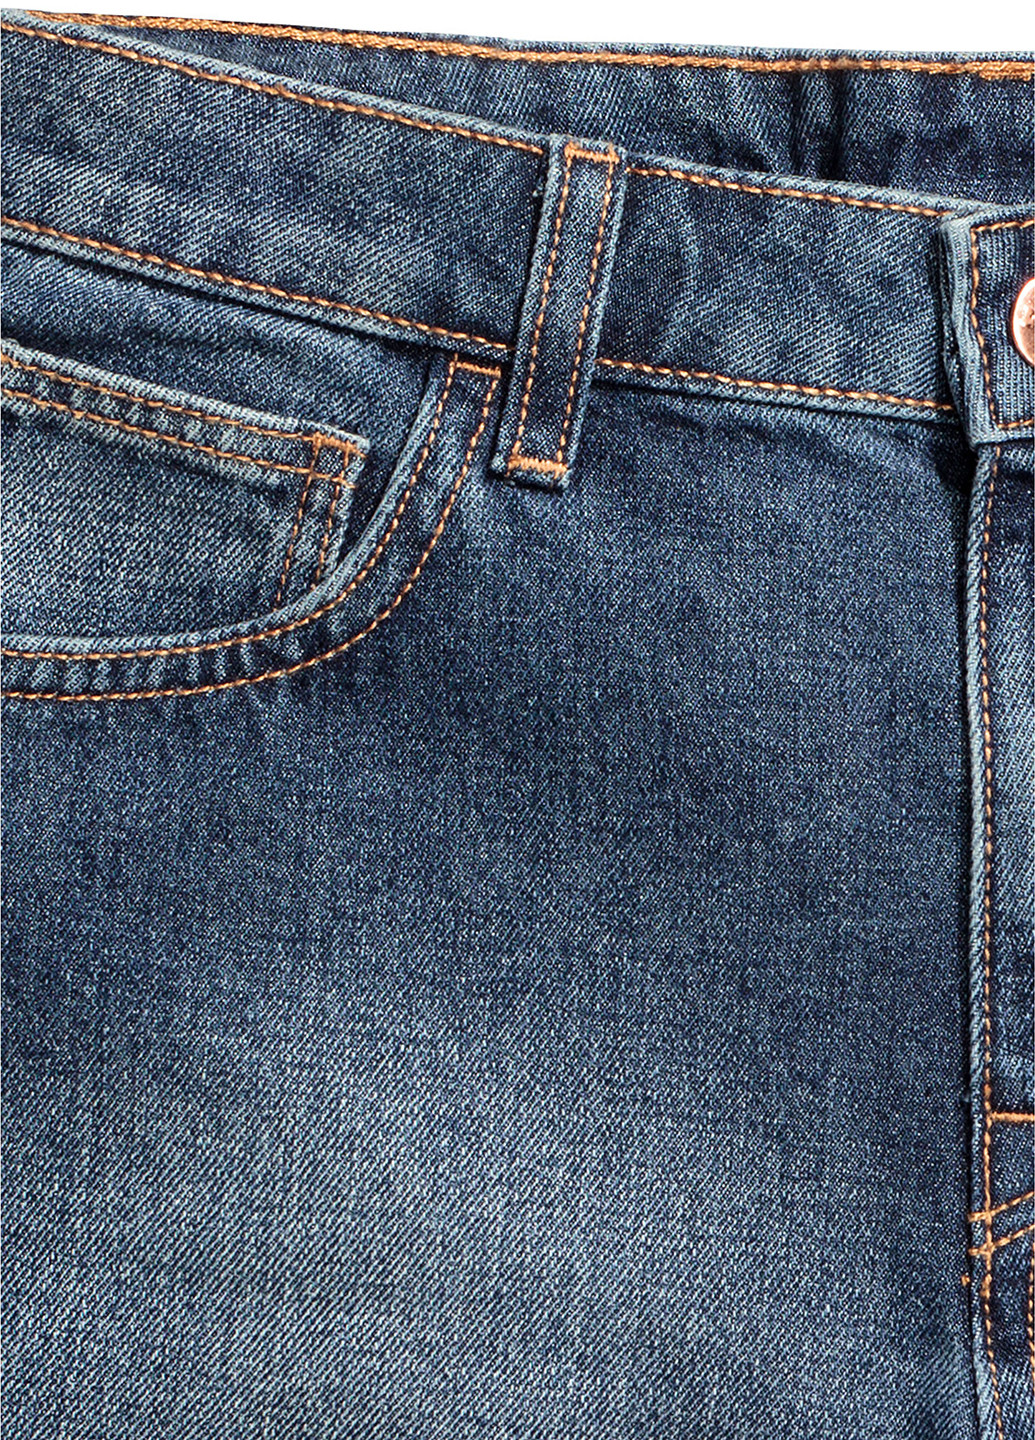 Шорты H&M однотонные тёмно-синие джинсовые вискоза, полиэстер, хлопок